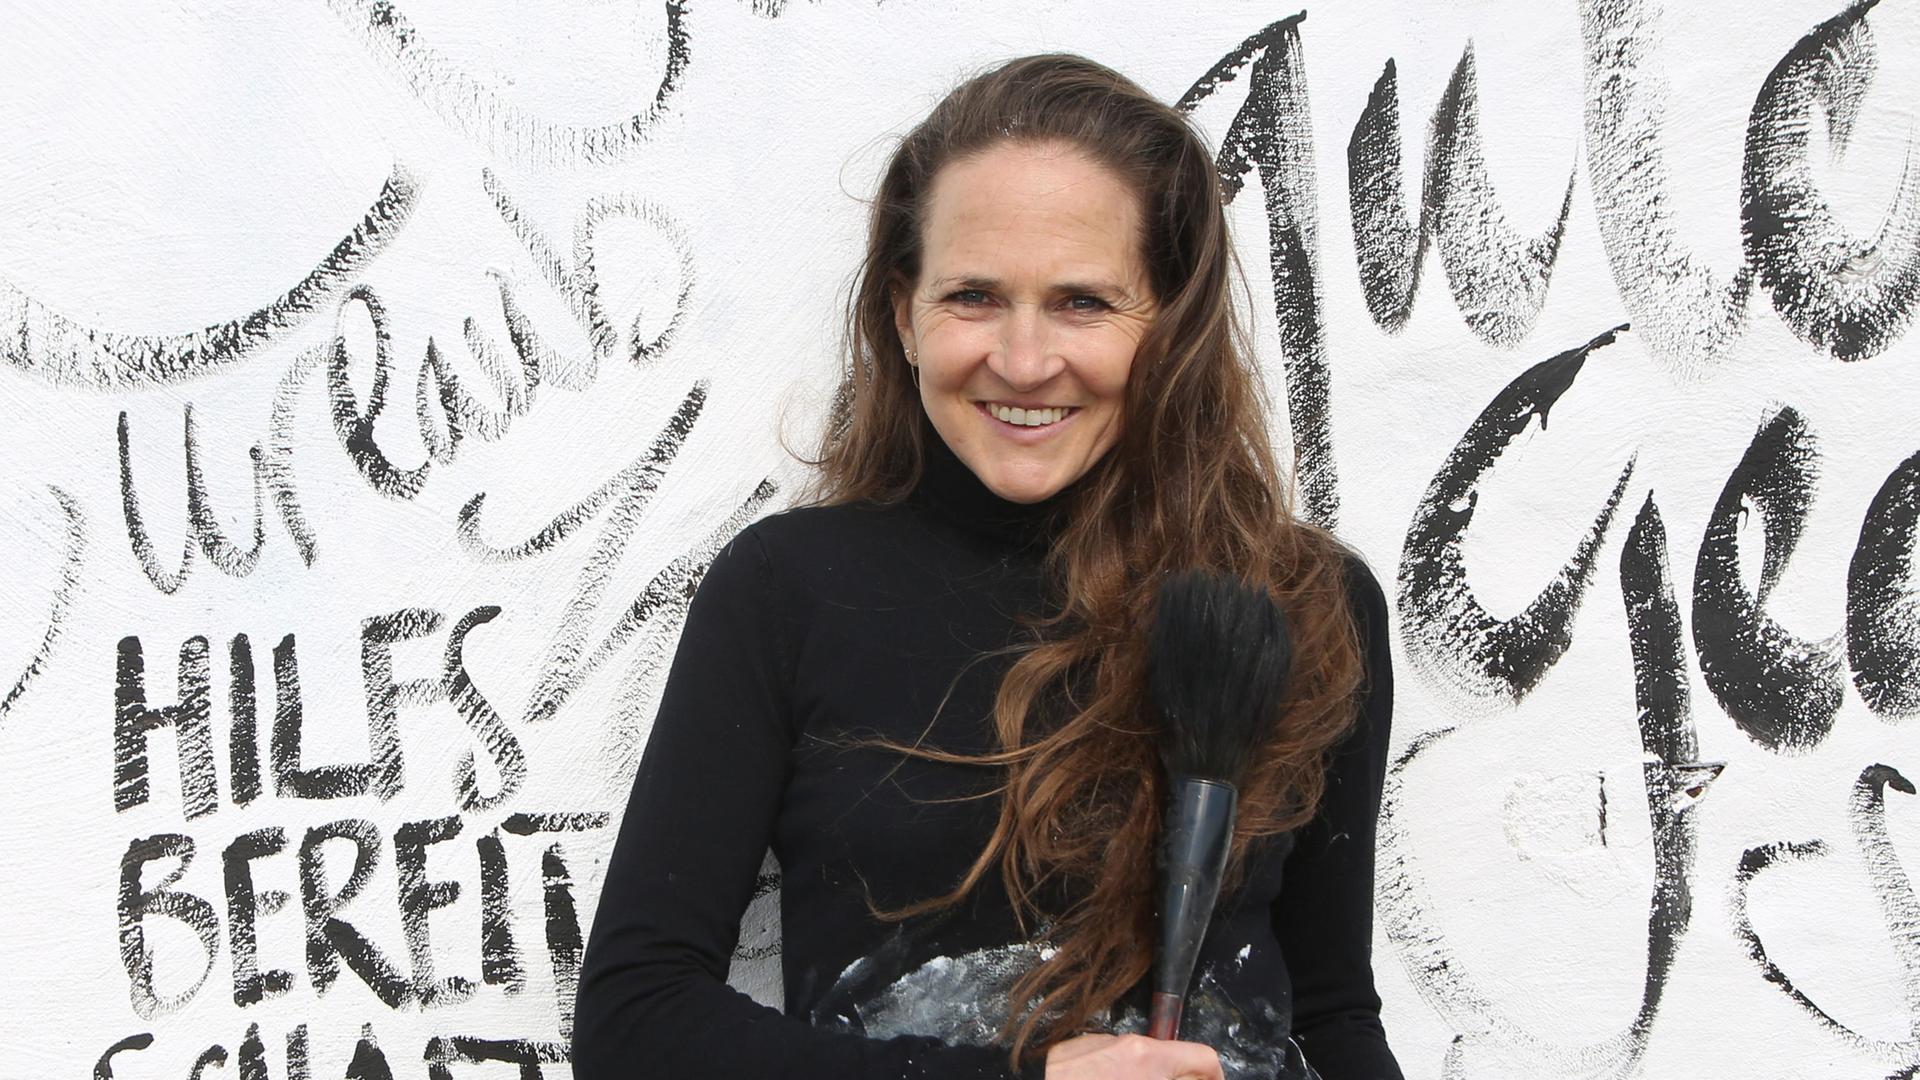 Die Künstlerin Jeannine Platz lehnt an einer weißen Wand, die sie mit Zeichen, Buchstaben und Wörtern bemalt hat. Sie trägt einen schwarzen Pulli und Jeans. 



